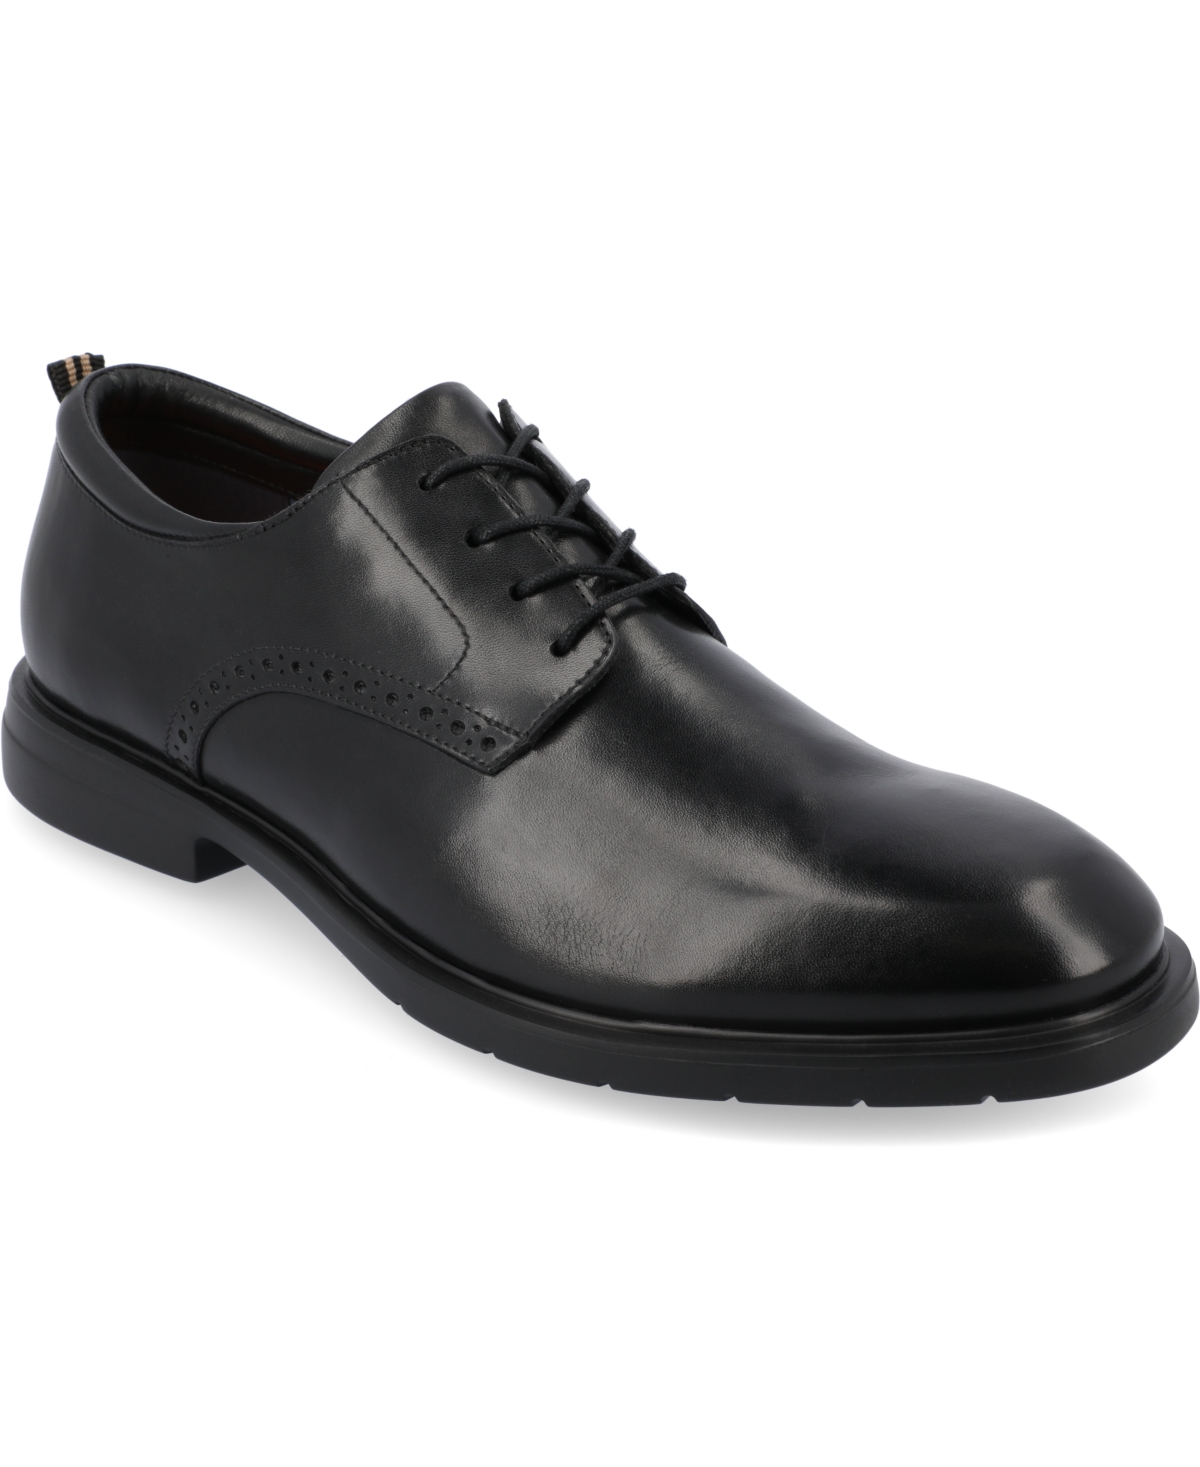 Men's Stafford Tru Comfort Foam Plain Toe Derby Dress Shoes - Cognac